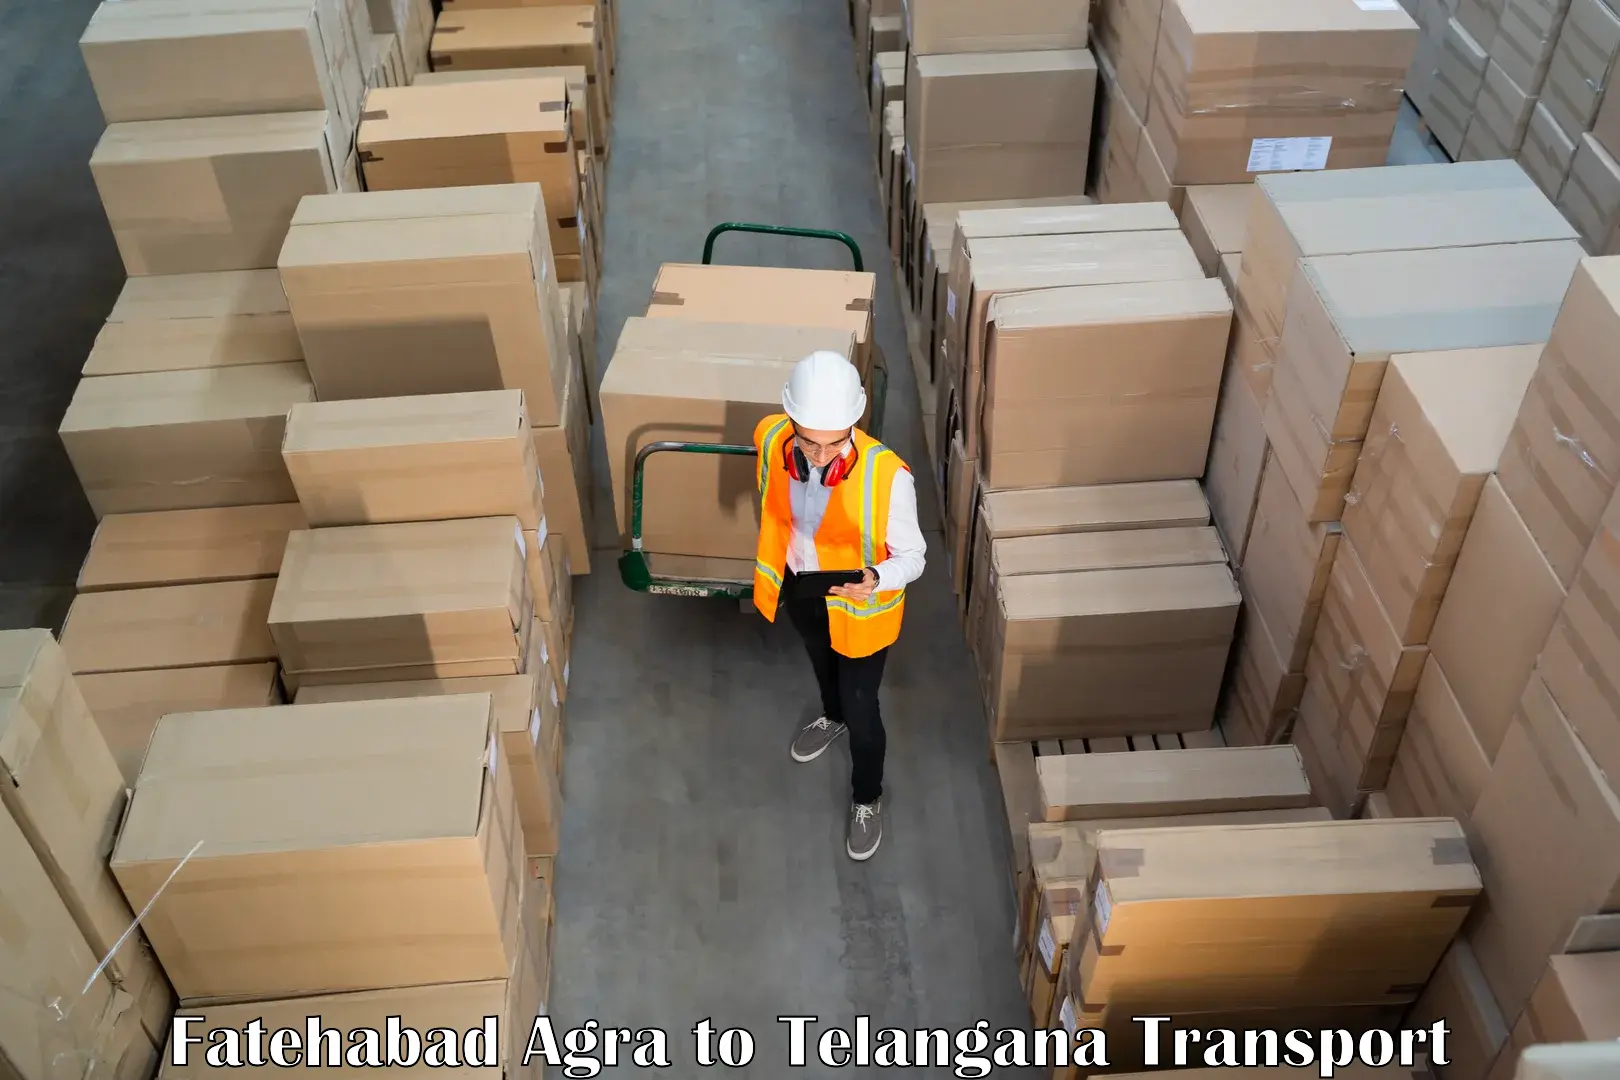 Container transport service Fatehabad Agra to Thirumalagiri